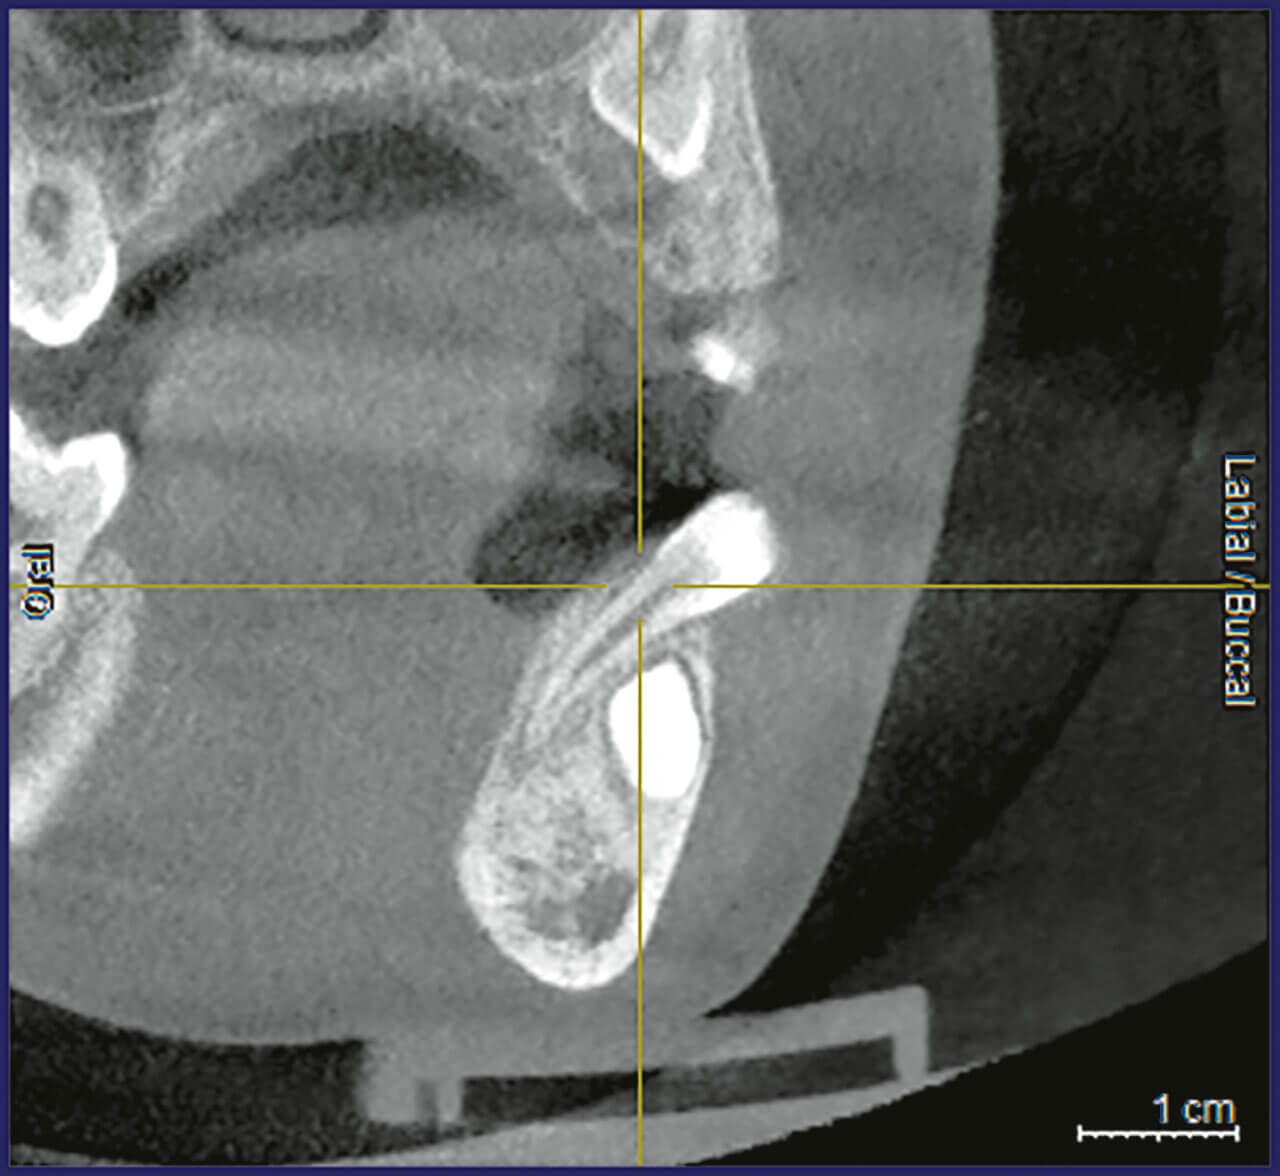 Abb. 2 Durch eine digitale Volumentomografie konnte die Wurzel des Zahns 32 lingual des Zahnkeims 34 lokalisiert werden.